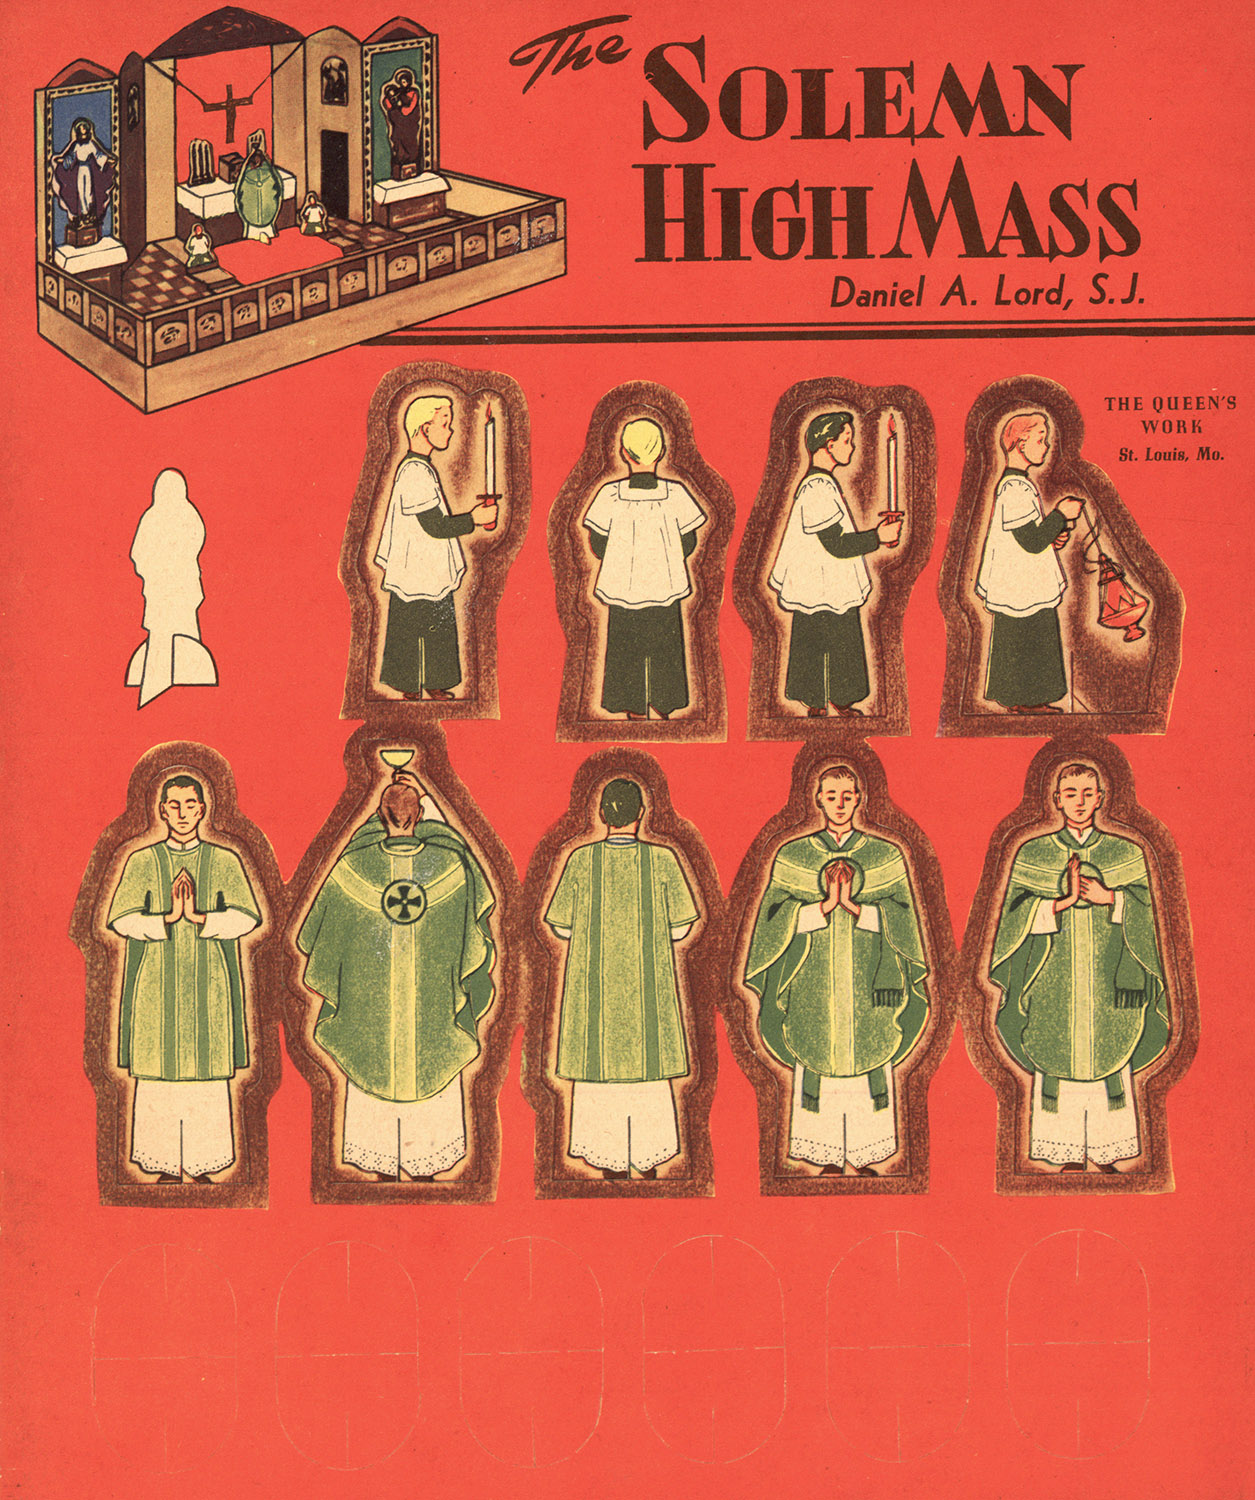 The Solumn High Mass